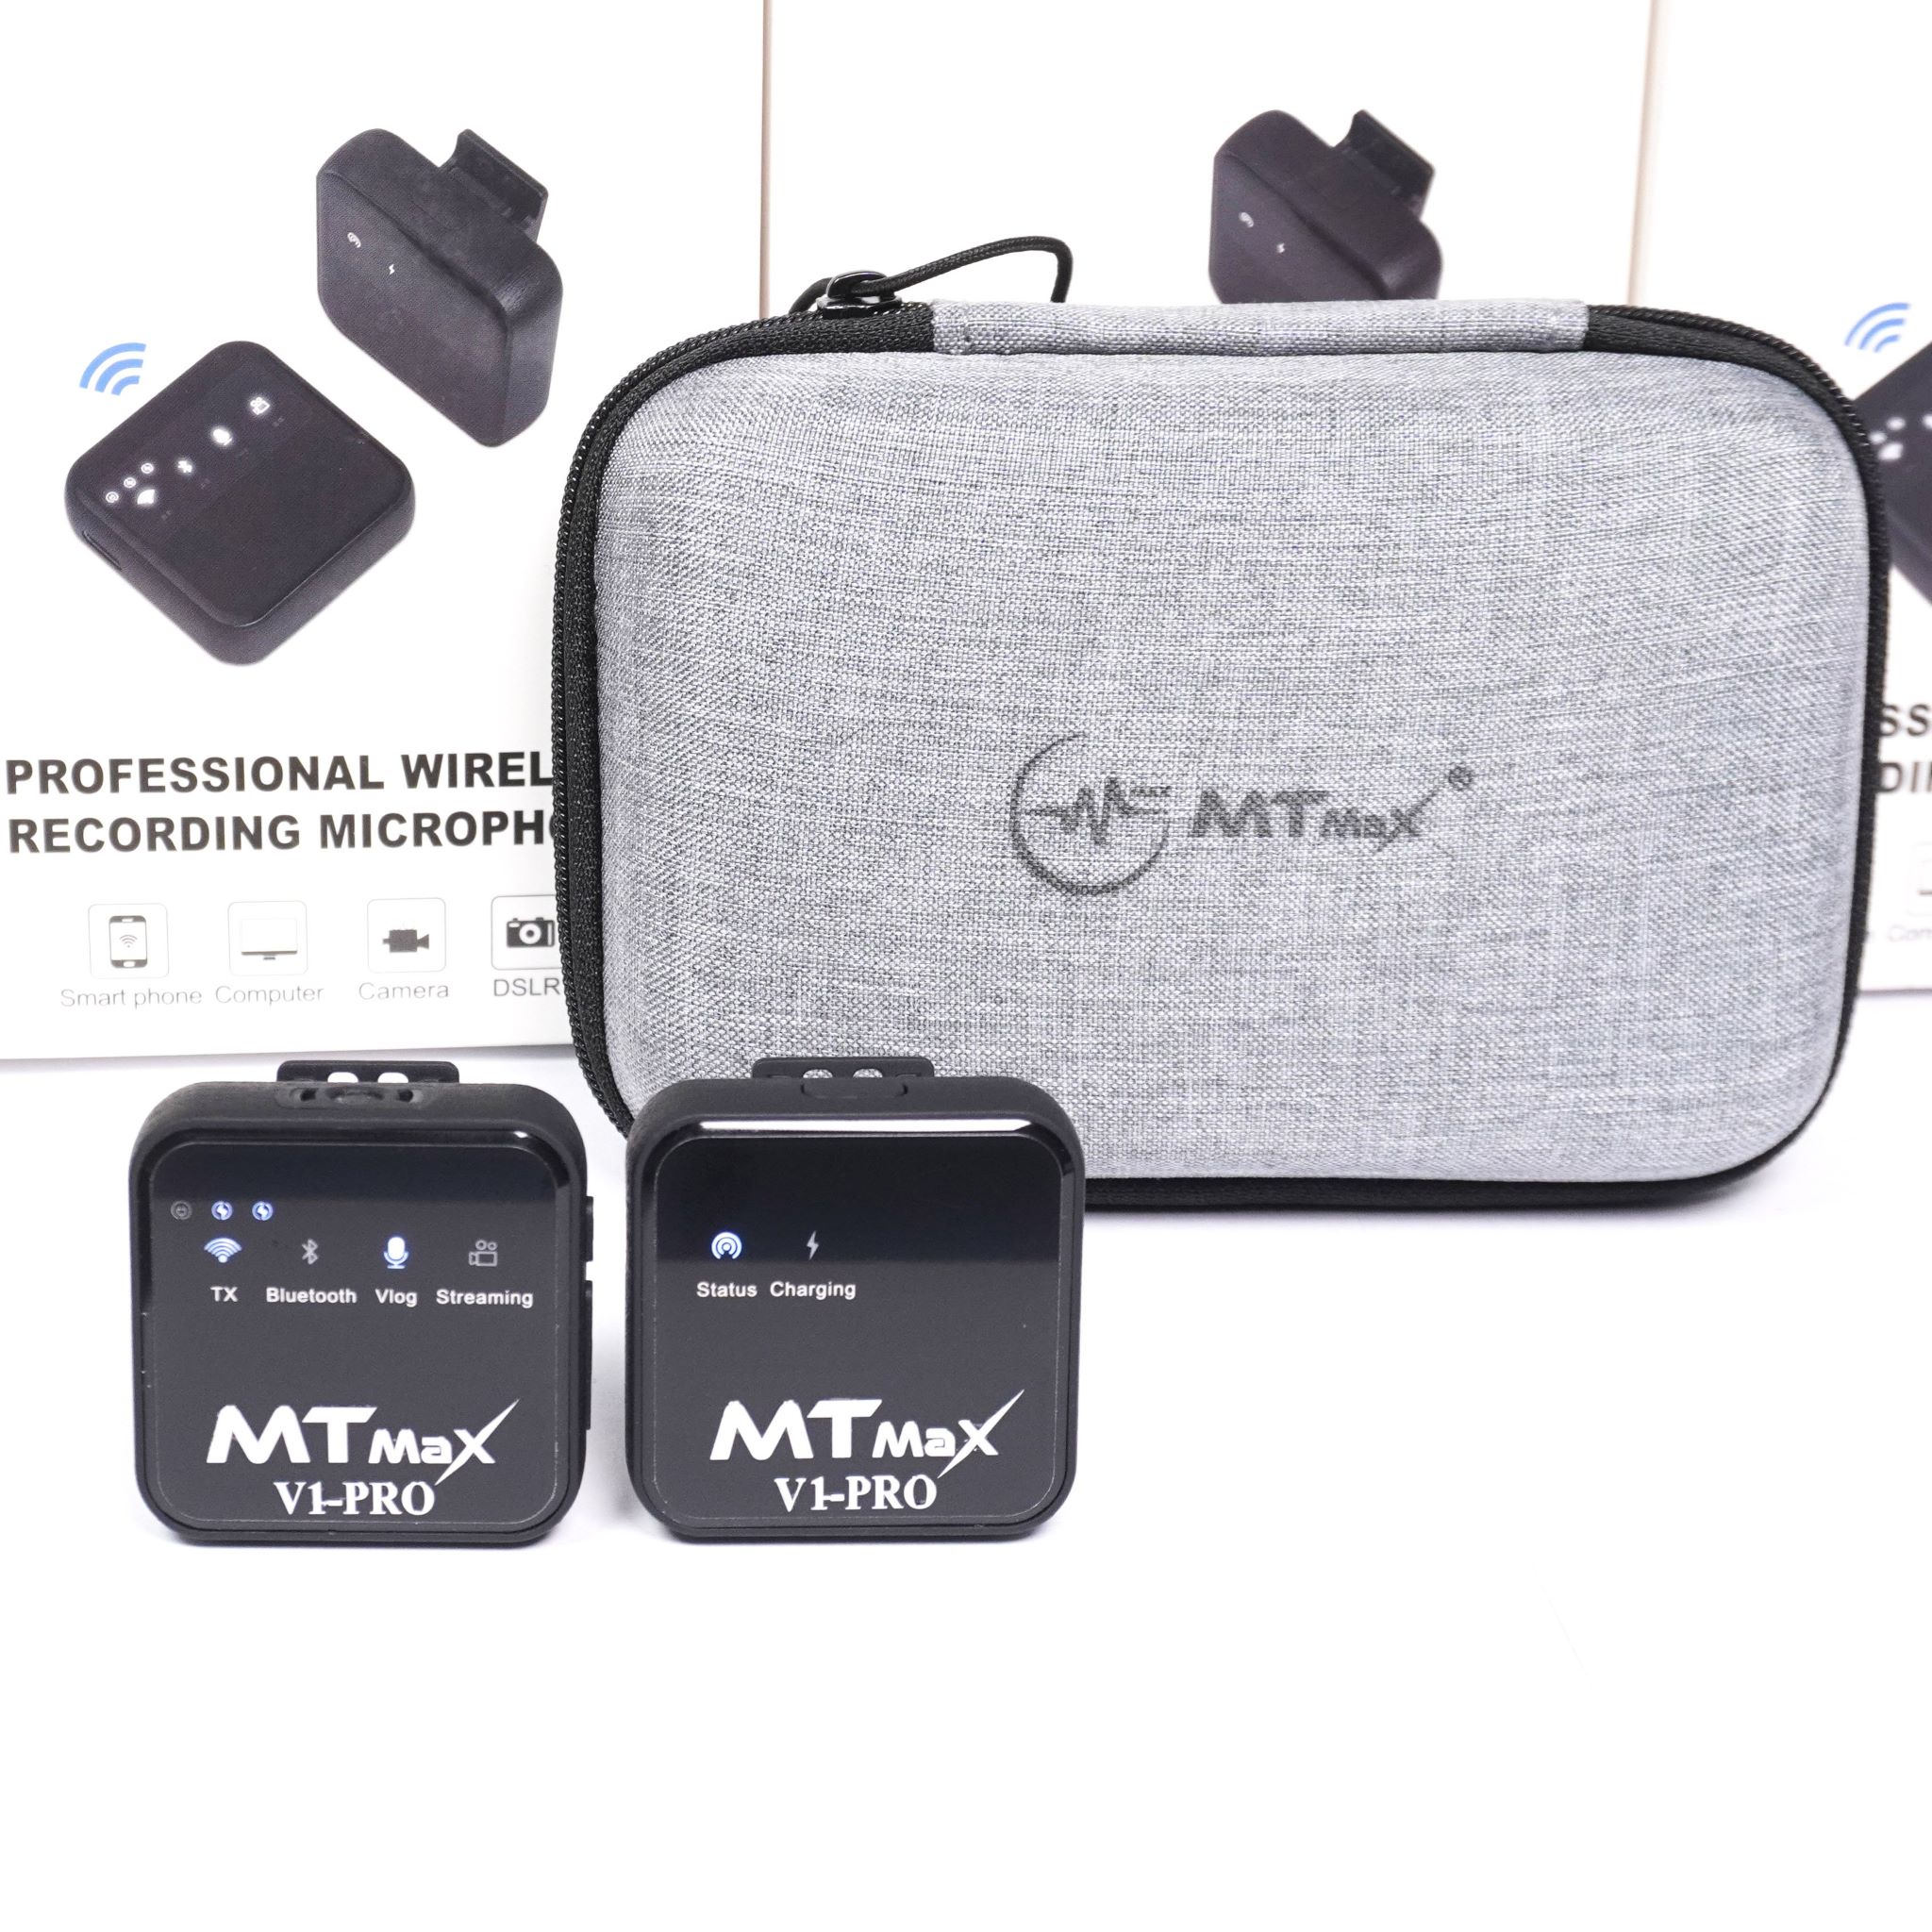 Micro cài áo Wireless MTMax V1-Pro - Mic thu âm không dây kết hợp Sound Card -  Lấy nhạc qua bluetooth - Tích hợp reverb hát livestream cực hay - Trang bị cổng cắm tai nghe kiểm âm - Micro dành cho điện thoại, máy ảnh, máy quay, DSLR - Hàng chính hãng